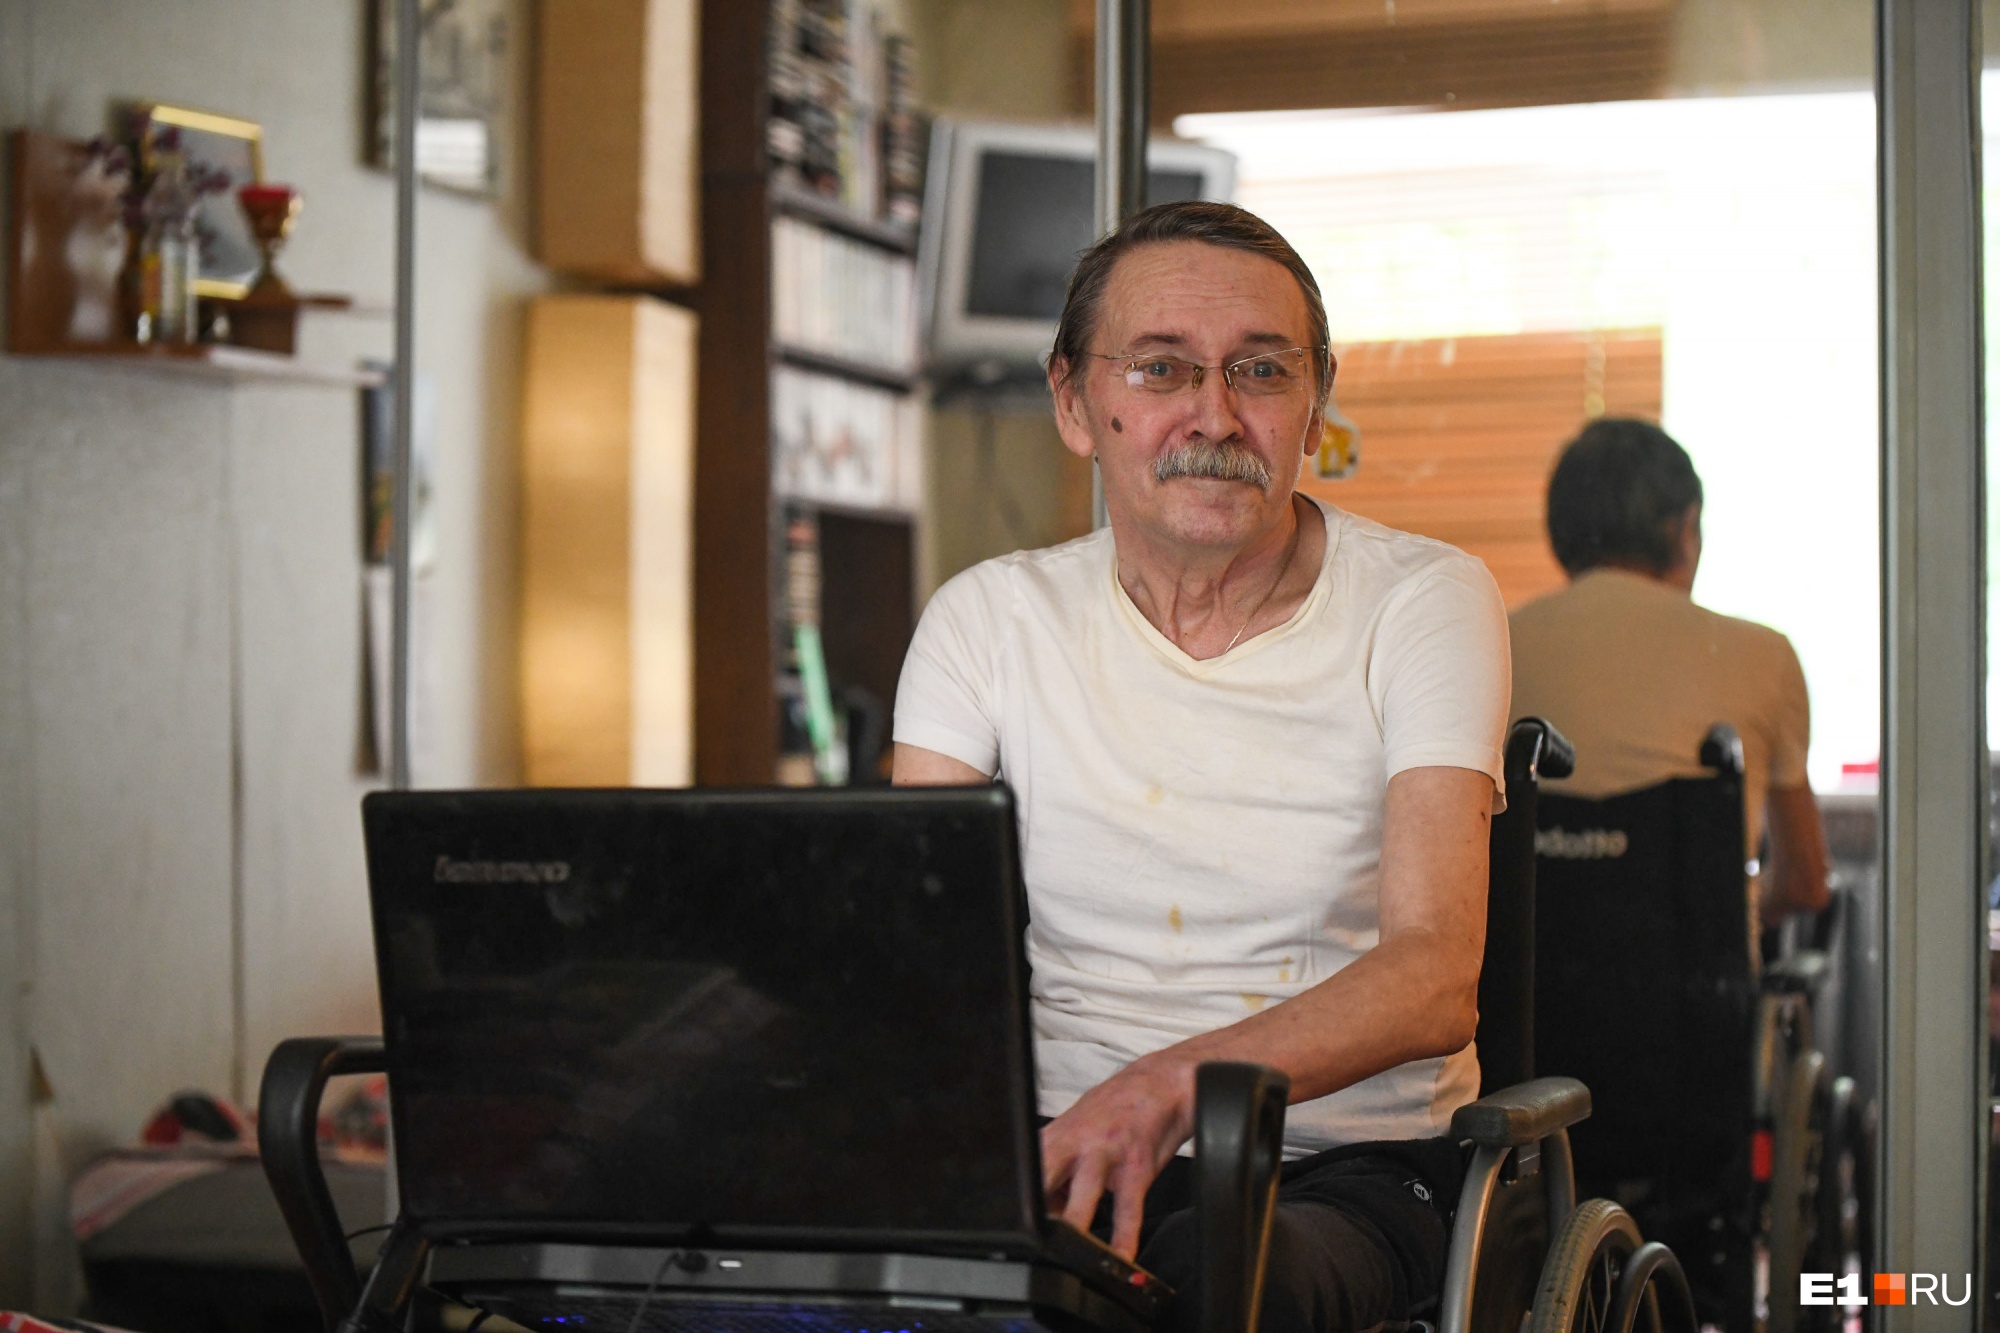 «Нога у меня одна, но руки-то две». Колонка журналиста о том, чем заняться инвалиду в Екатеринбурге